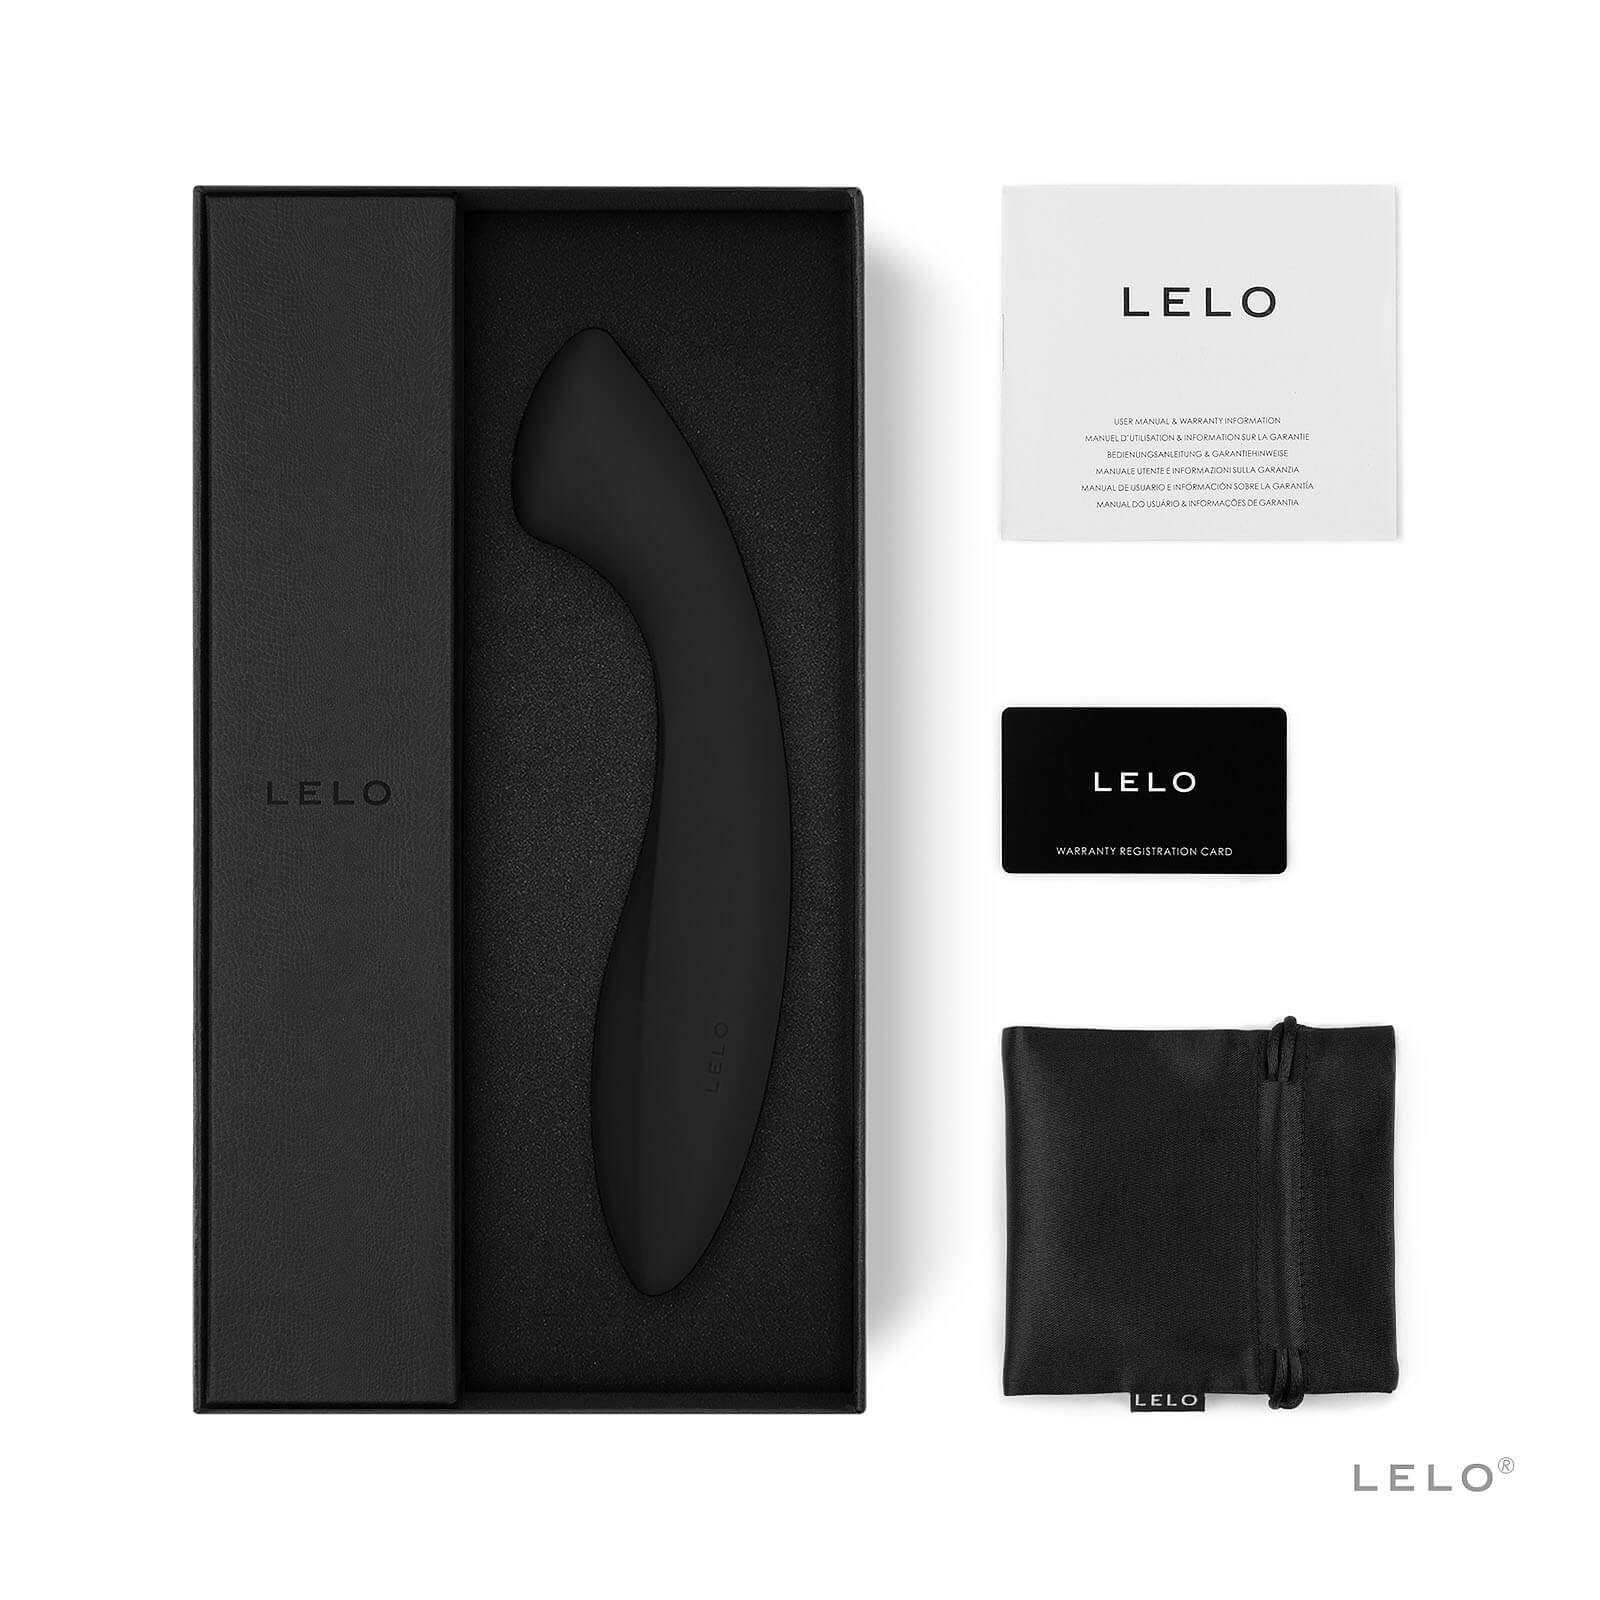 LELO Ella (18 cm, Black)